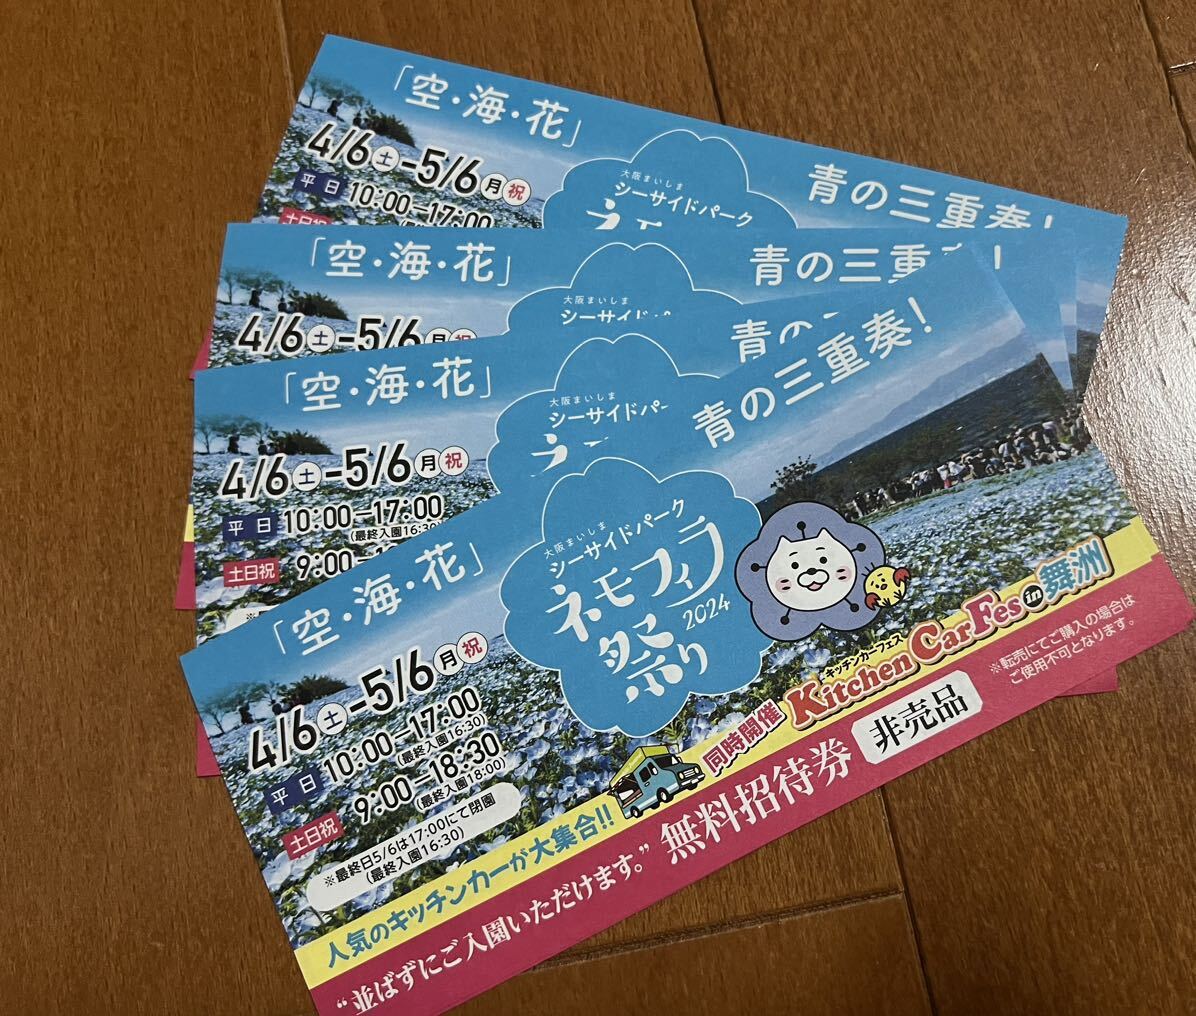  Osaka Mai . nemophila festival free invitation ticket 4 sheets 